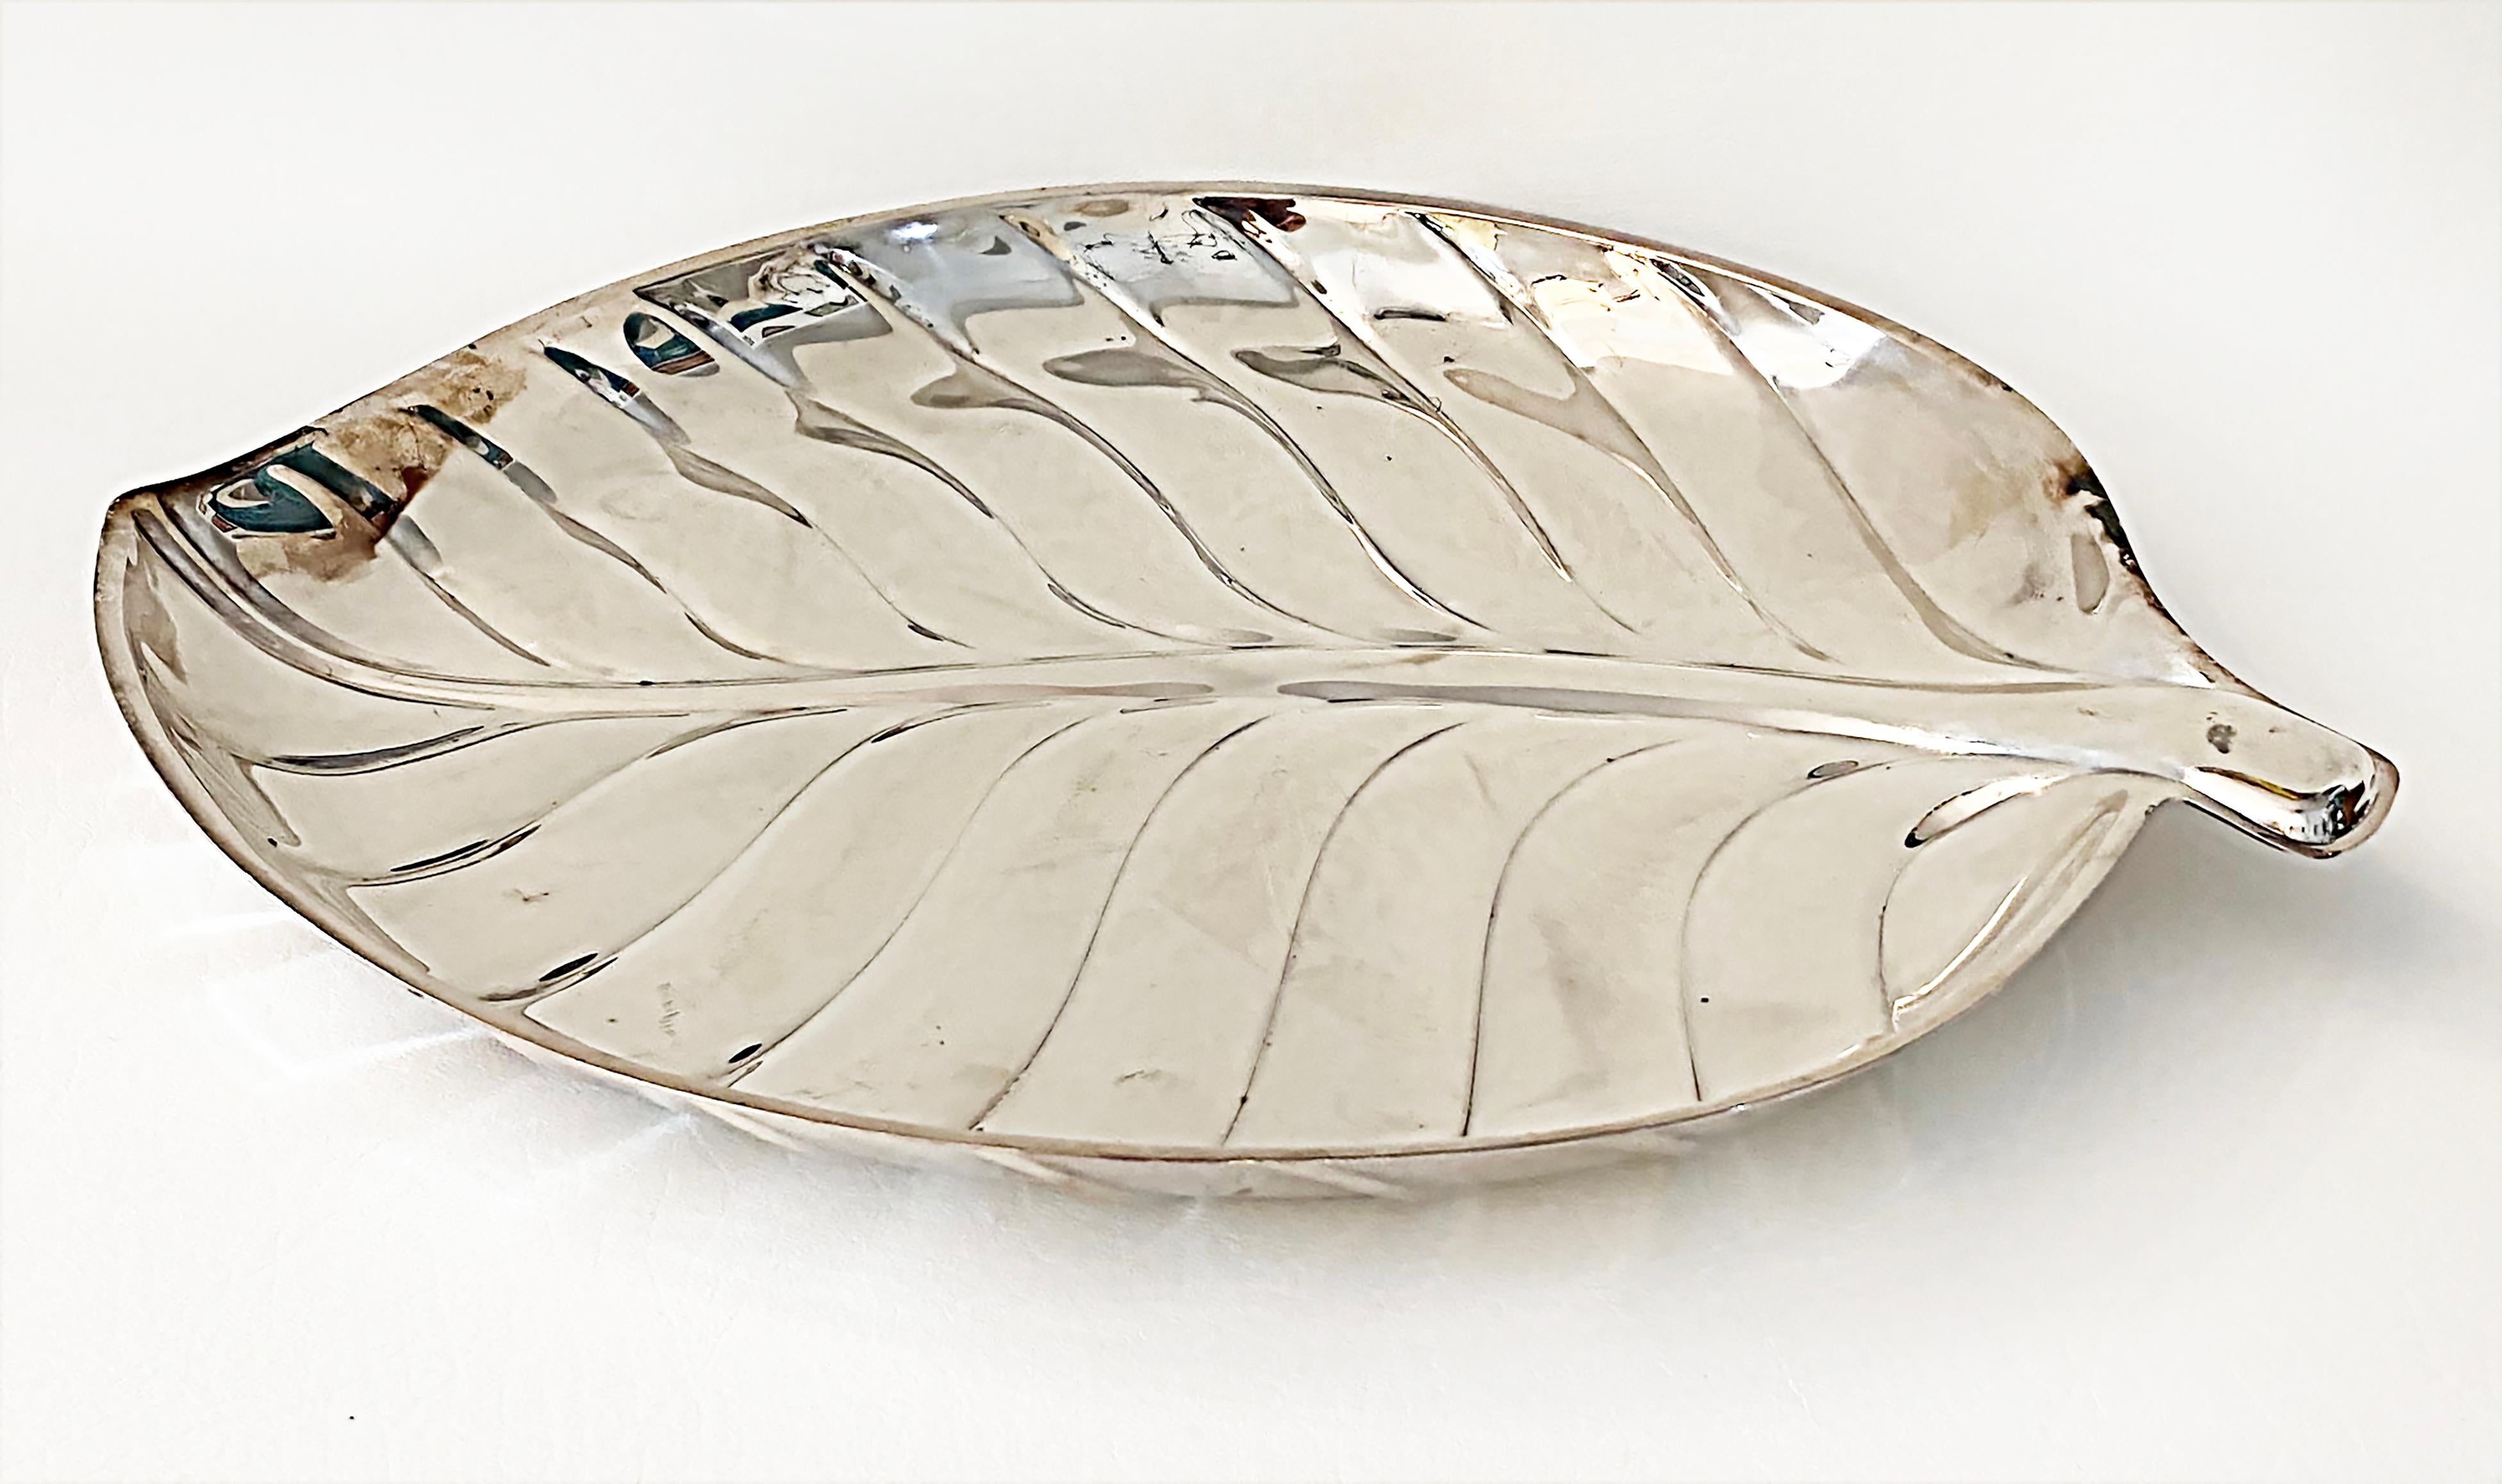 International Silver Leaf Plated Serving Tray, Mid-Late 20th Century, #8199

Nous proposons à la vente un plateau de service à feuilles en métal argenté de l'International Silver Company, modèle 8199, datant du milieu et de la fin du 20e siècle.  Le